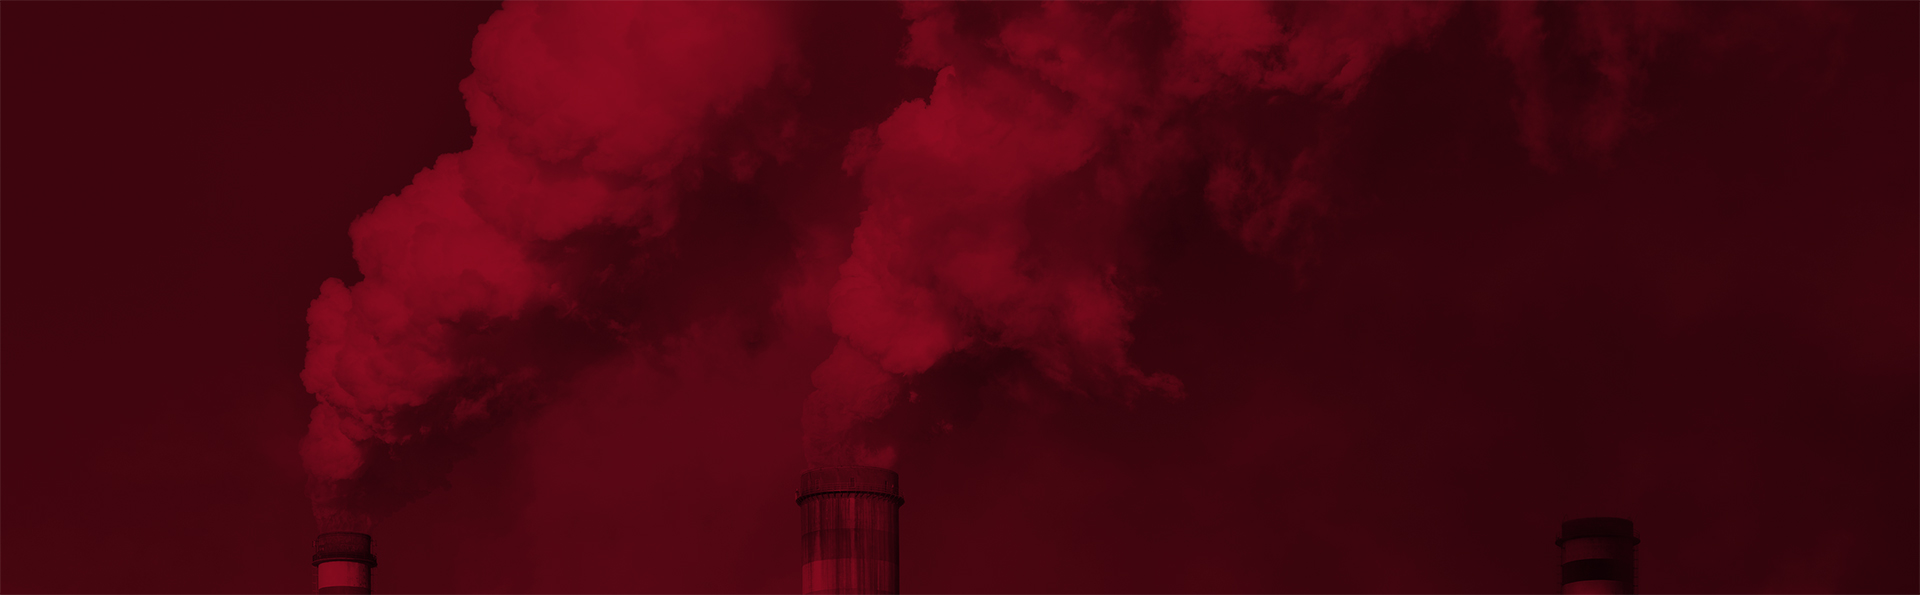 University of Houston: UH Energy Carbon Management: Panacea or Hype? Symposium Image